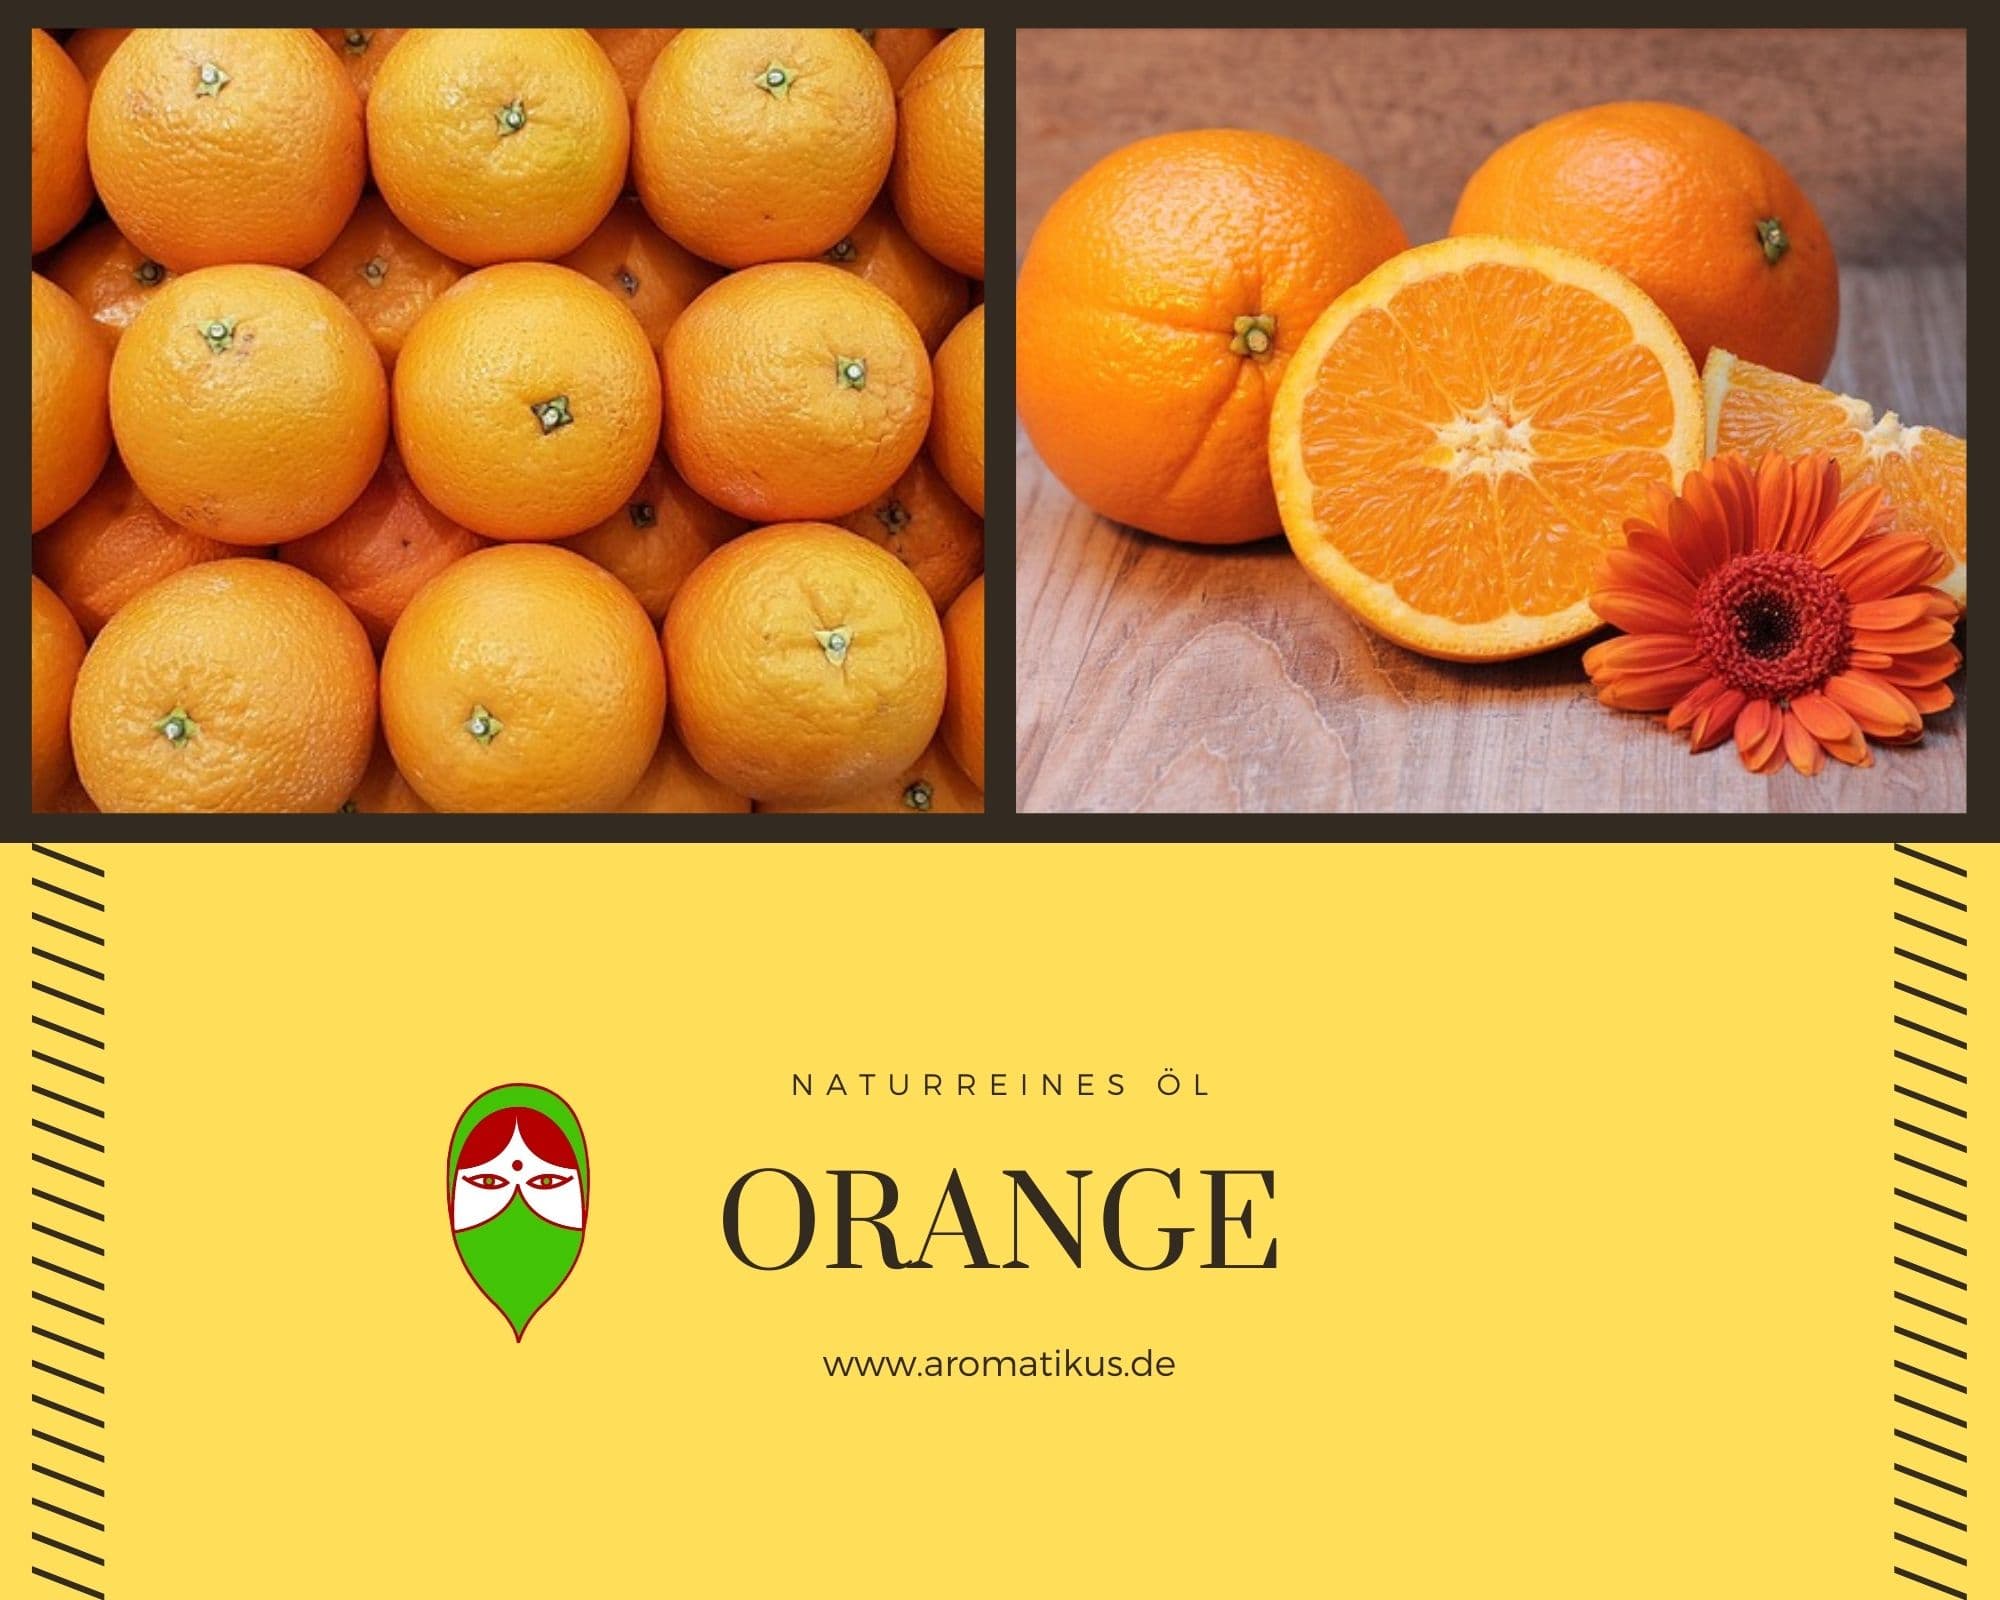 Ätherisches Duftöl Orange als naturreines Öl von Aromatikus